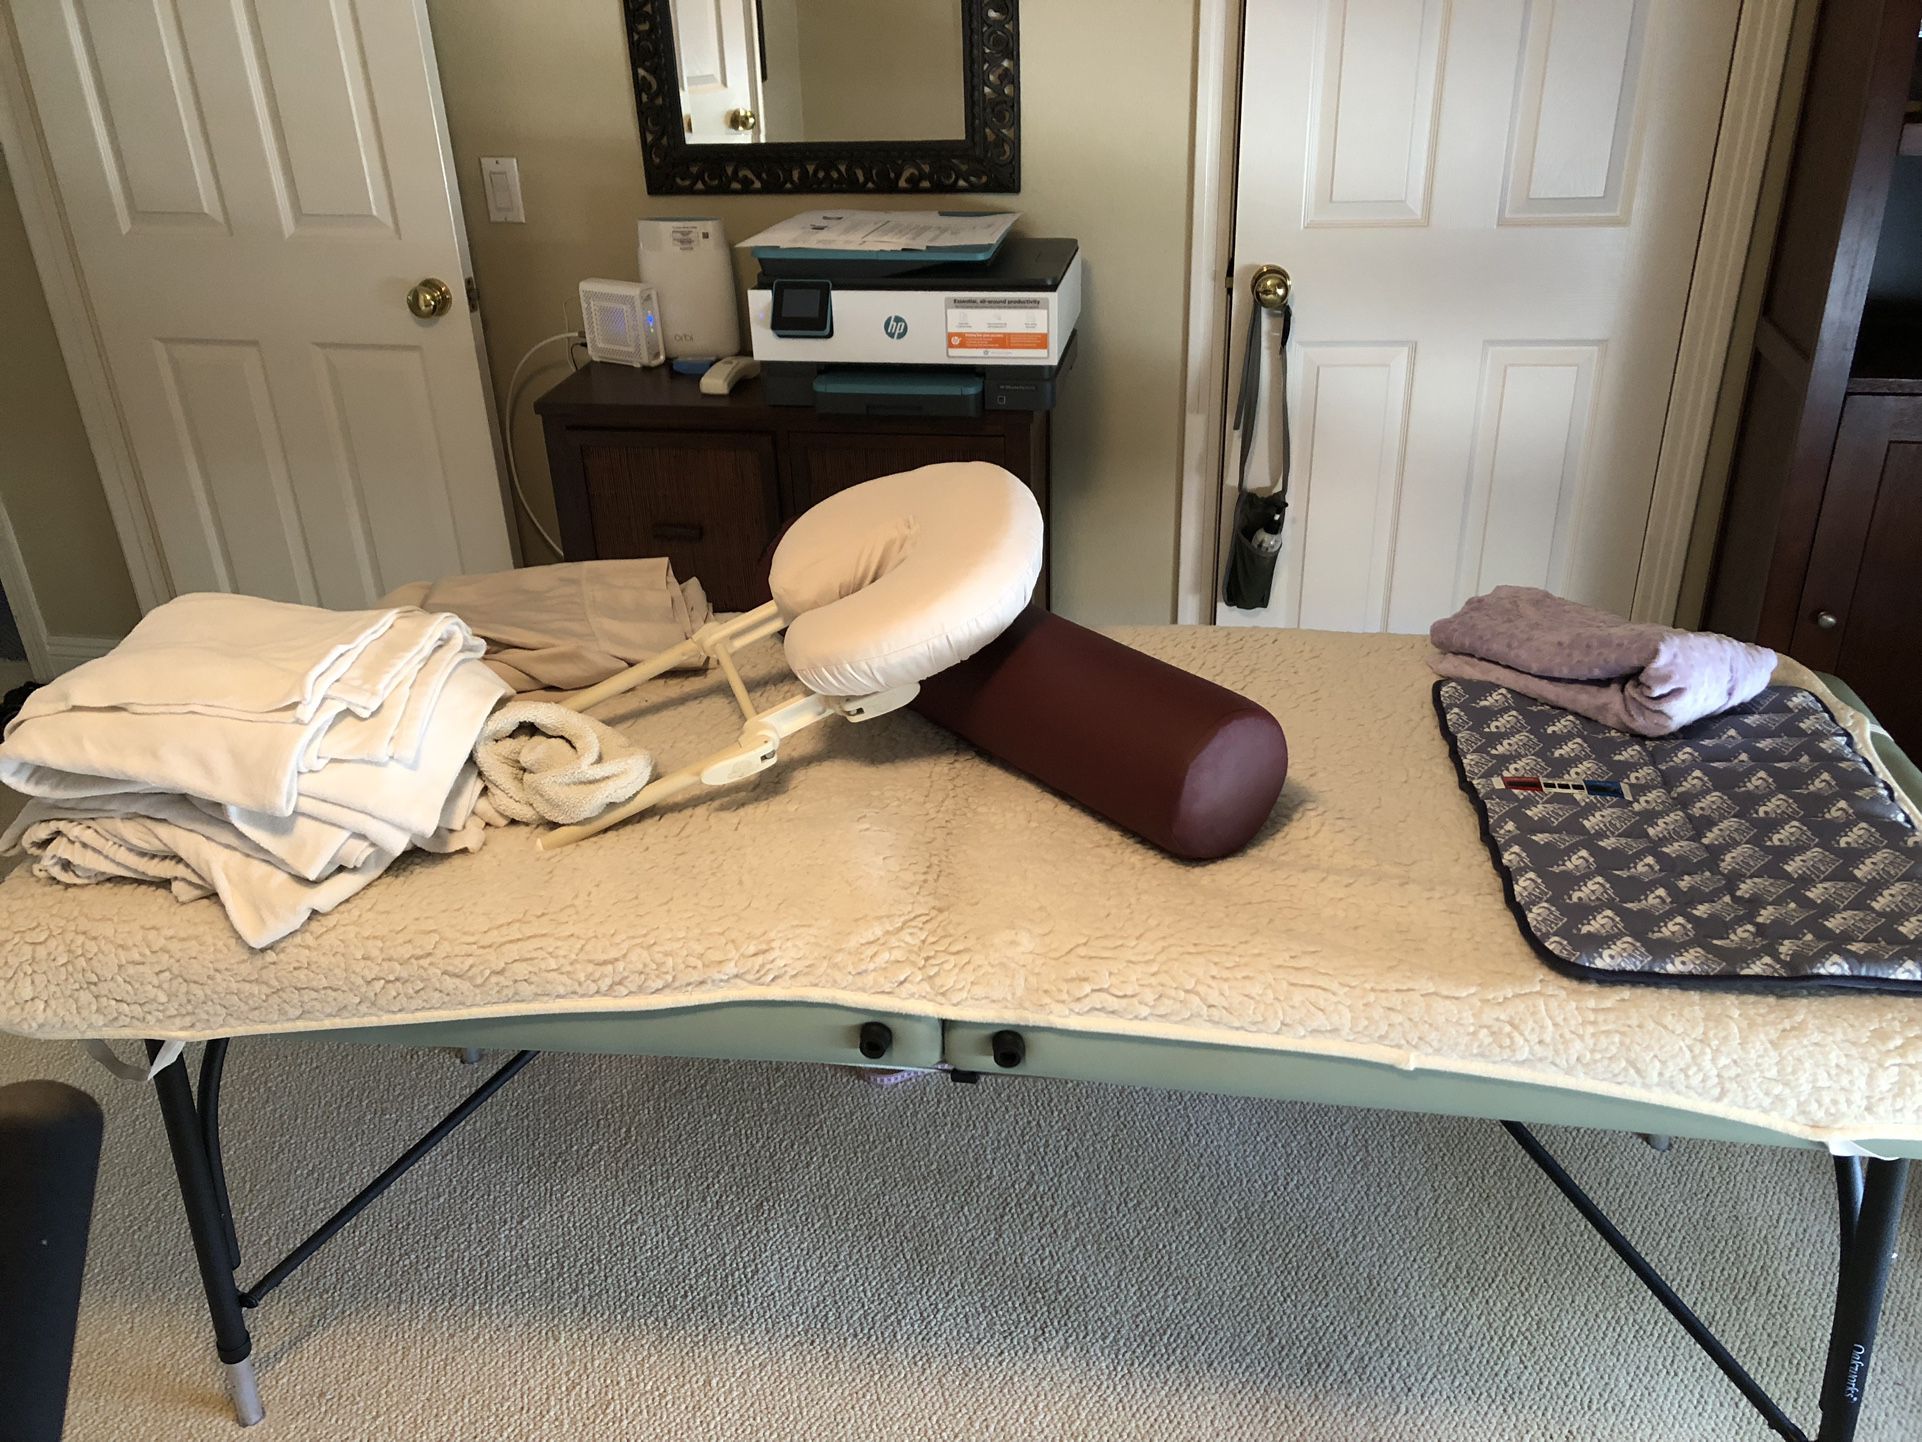 Oakworks Massage Table for Sale in San Clemente, CA - OfferUp